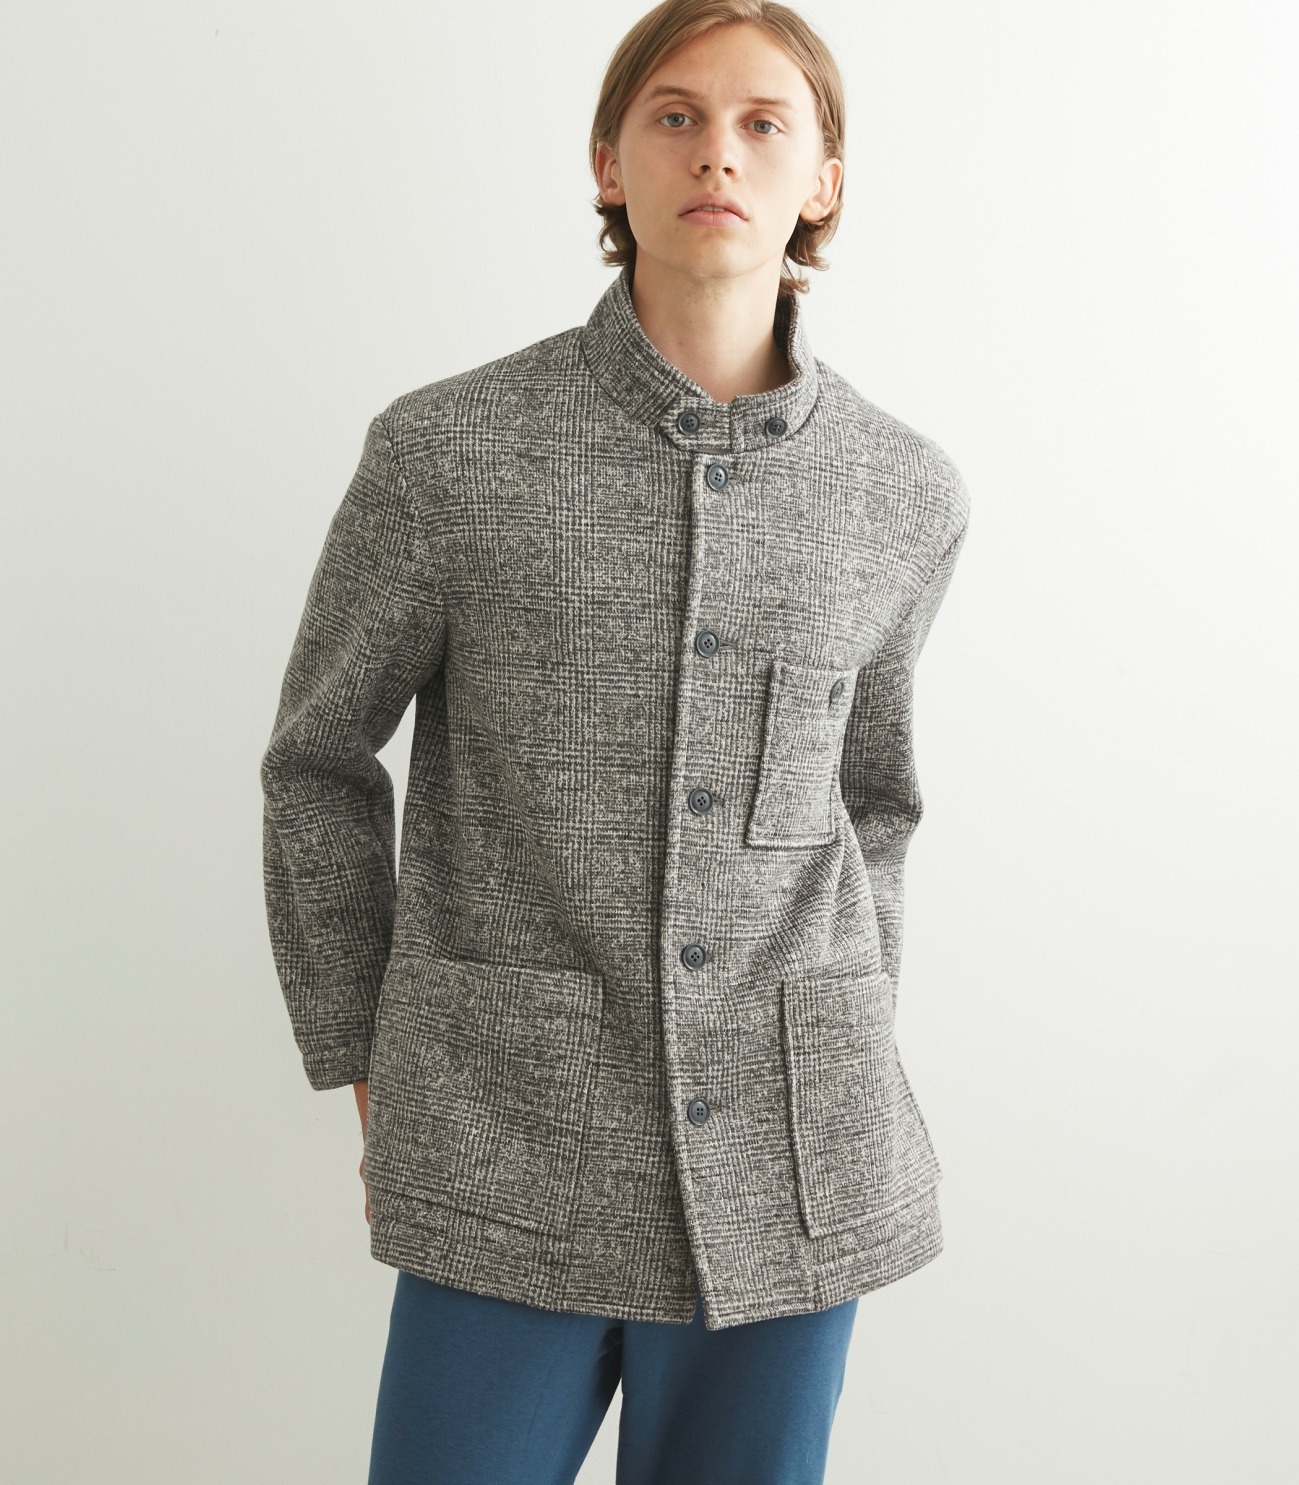 Men's sweater fleece comfort jacket 詳細画像 grey 6